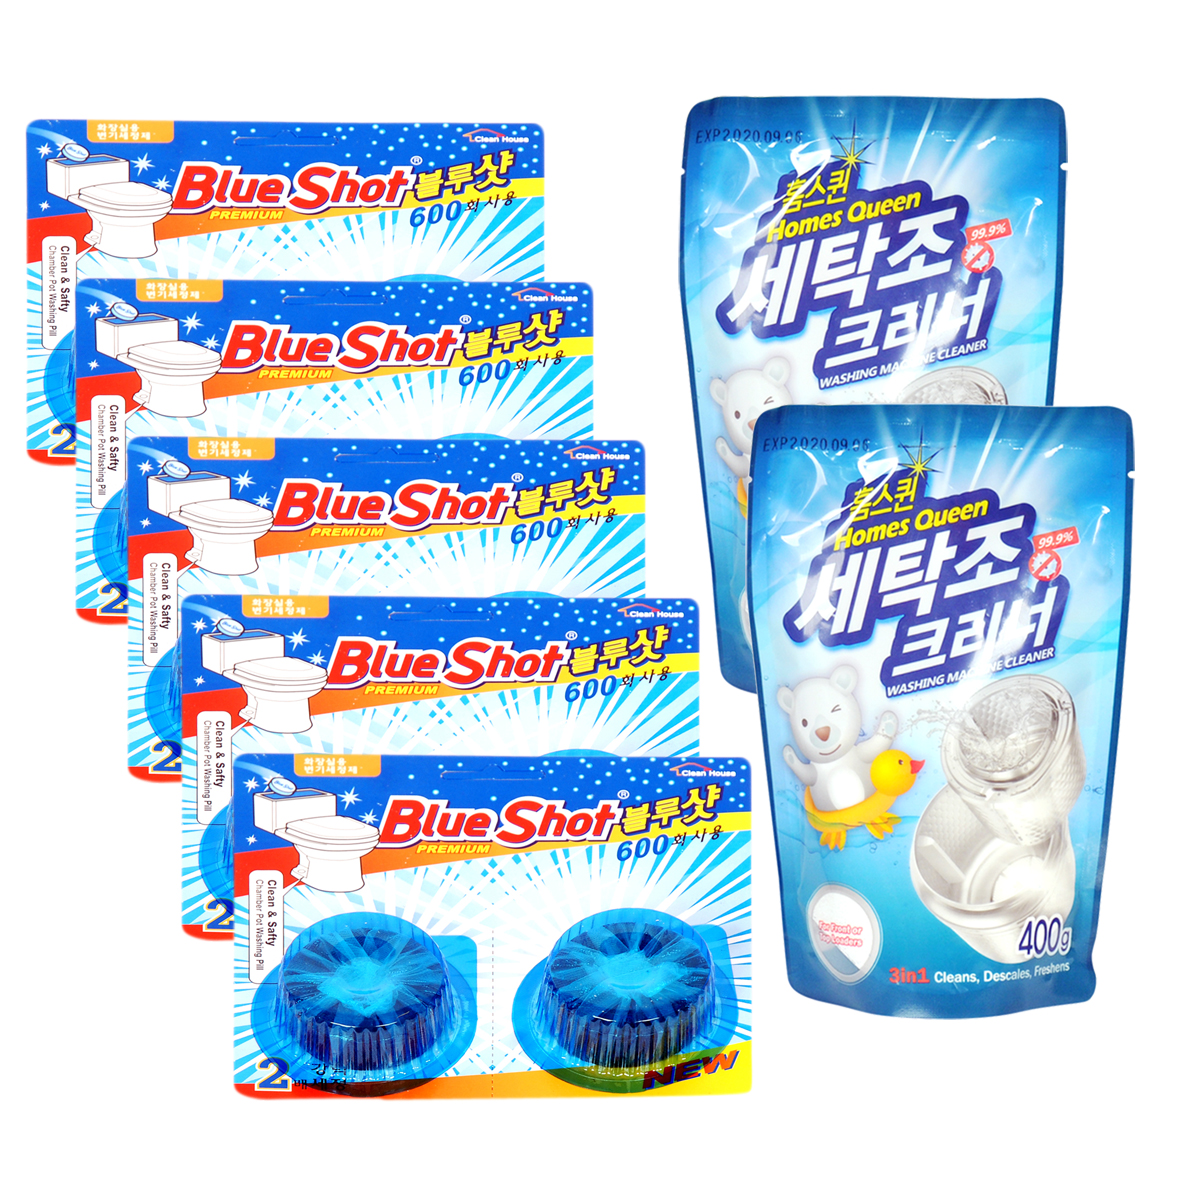 Combo 5 vỉ vệ sinh bồn cầu BlueShot + 2 gói vệ sinh máy giặt Homes Queen: Hàng nhập Hàn Quốc, chất lượng hàng đầu